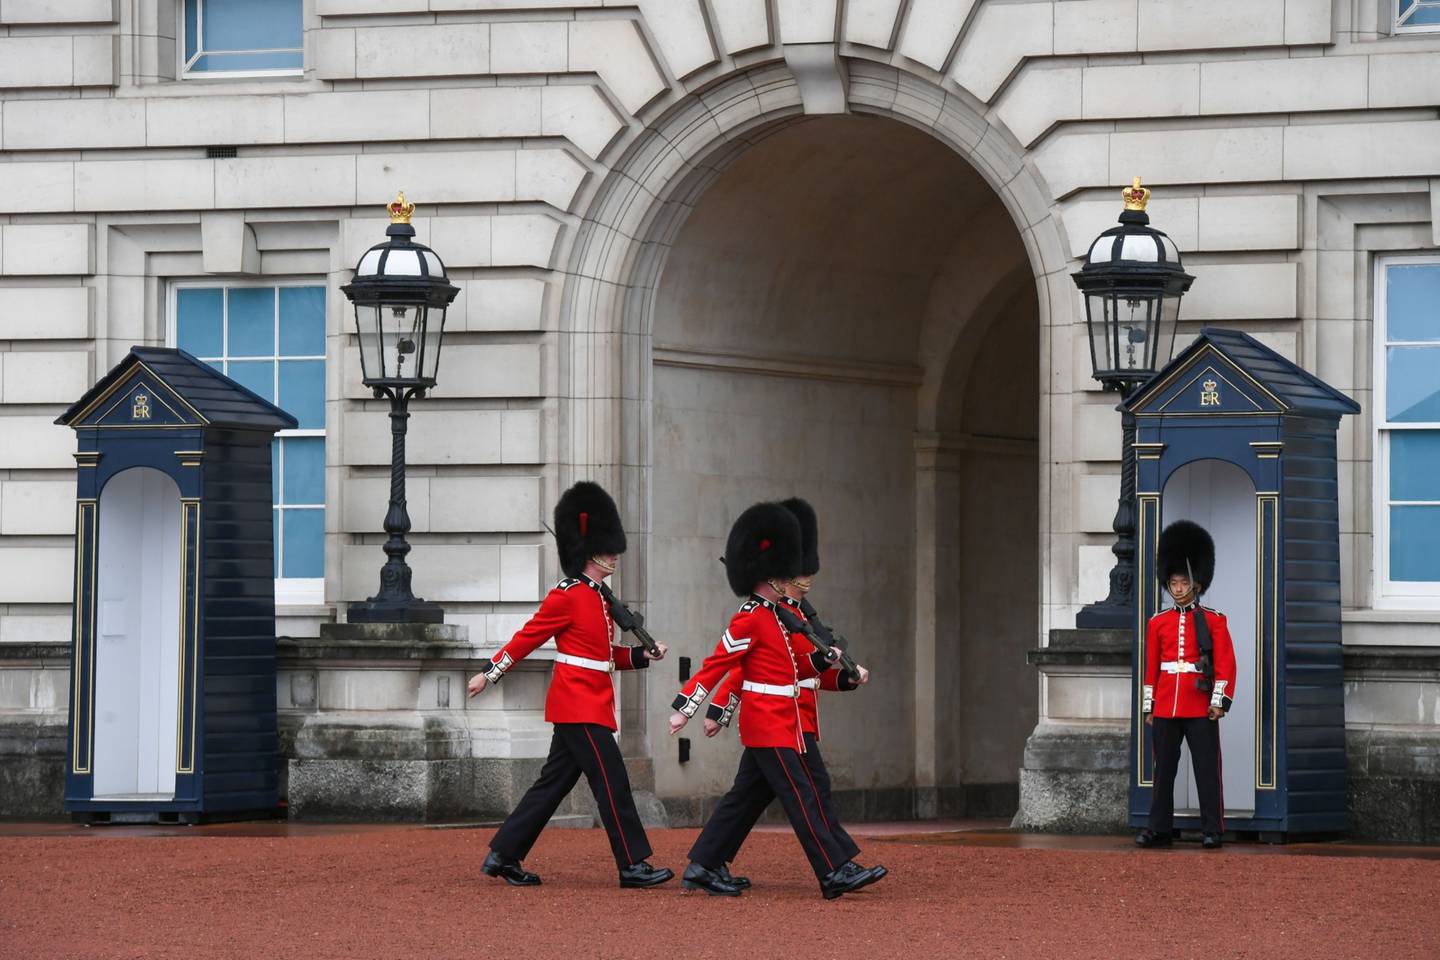 Soldados en servicio como Guardia de la Reina patrullan en el Palacio de Buckingham en Londres, Reino Unido, el jueves 8 de septiembre de 2022.dfd